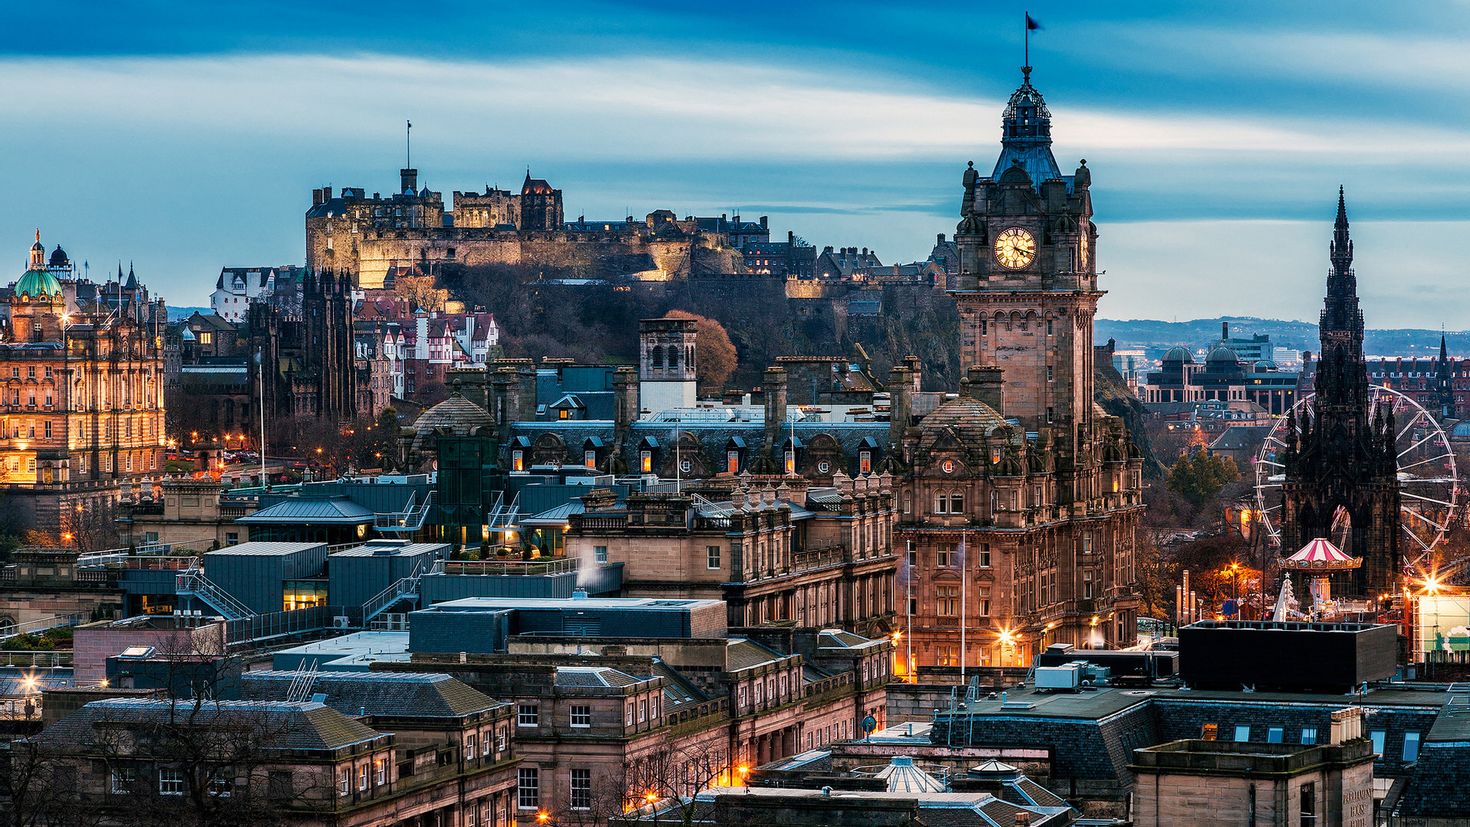 Площадь шотландии. Эдинбург, Шотландия, Великобритания. Шотландия столица Эдинбург. Столица Шотландии Edinburgh. Королевская миля в Эдинбурге.